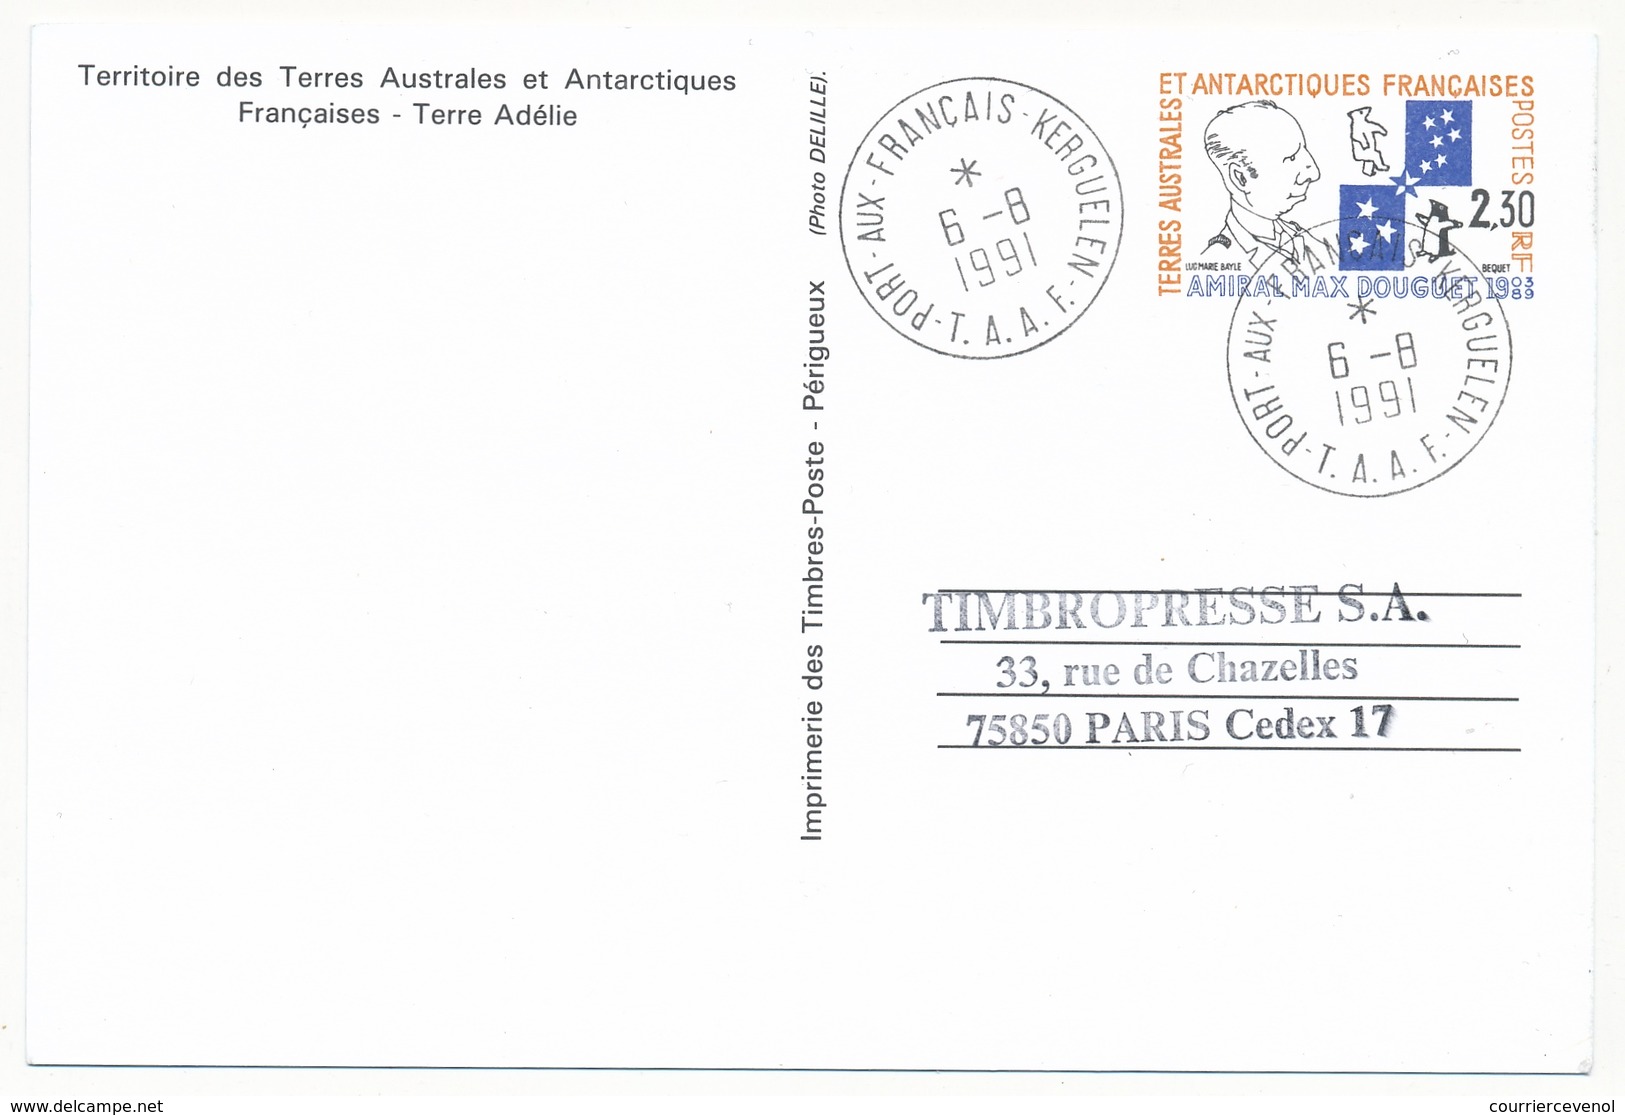 TAAF - 5 X Entier Postal Amiral Max Douguet - Obli St Martin, Dumont D'Urville, Alfred Faure, Port Aux Français Et Neuf - Enteros Postales